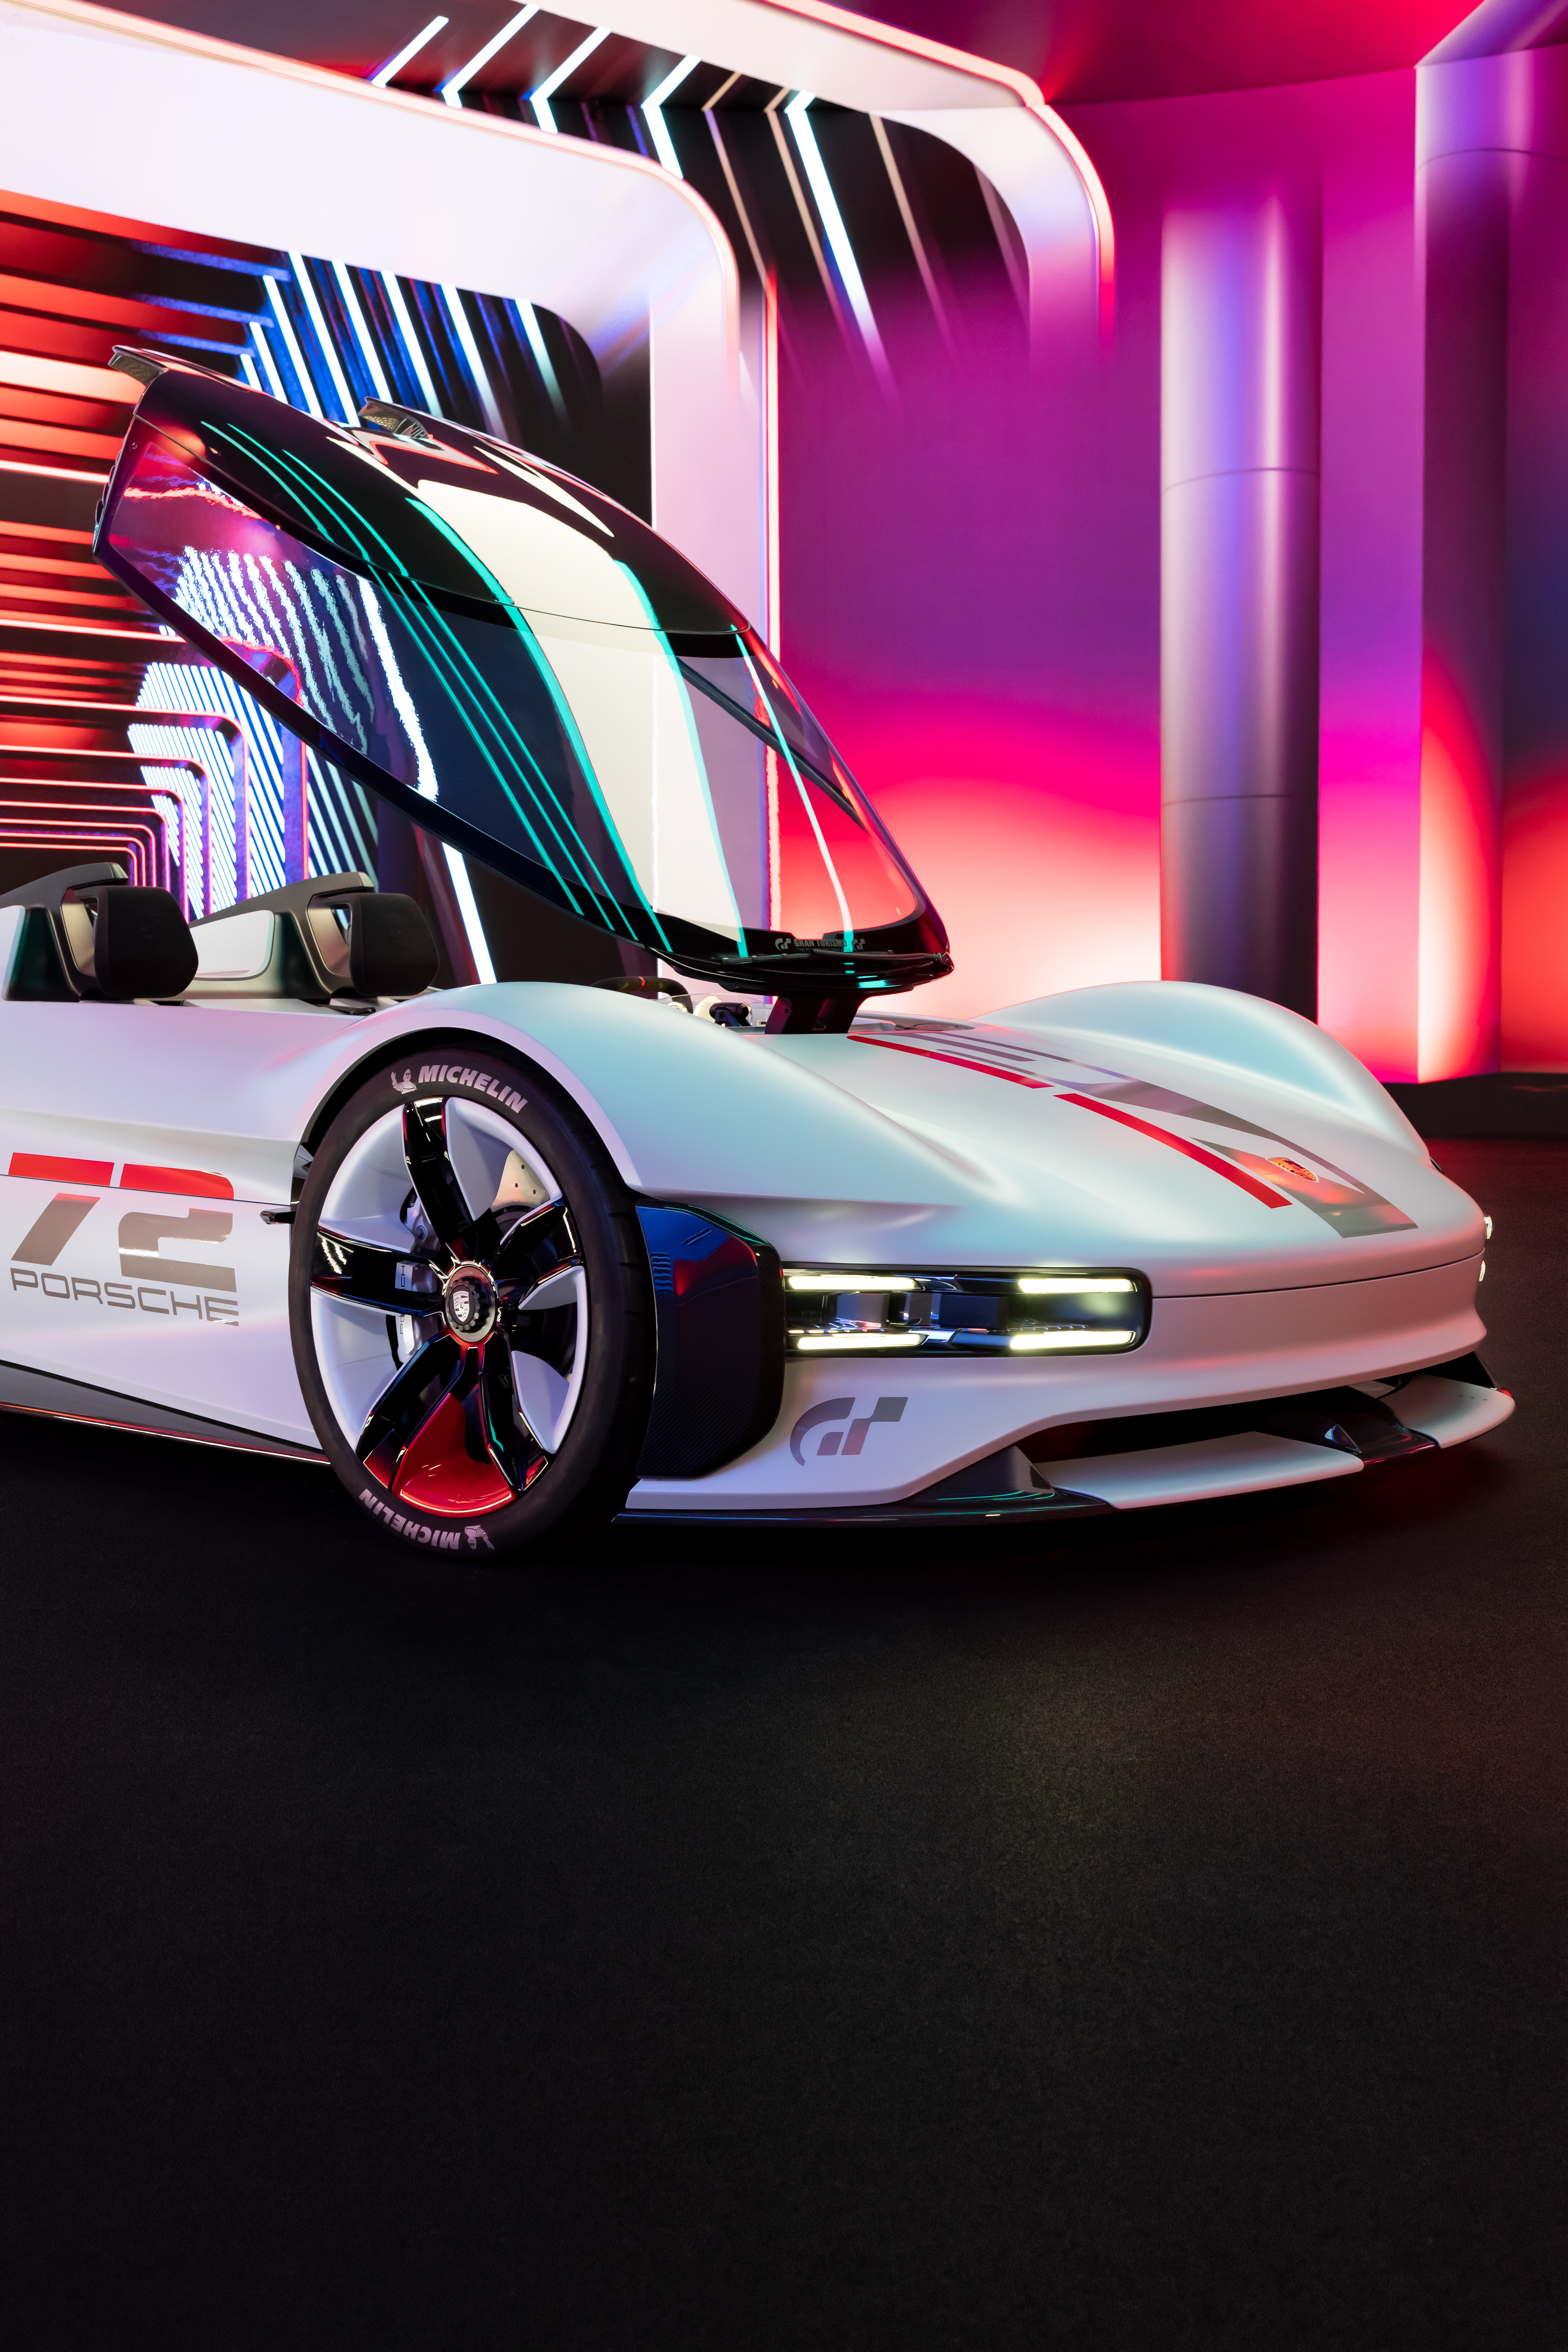 Porsche Vision Gran Turismo that will feature in Gran Turismo 7